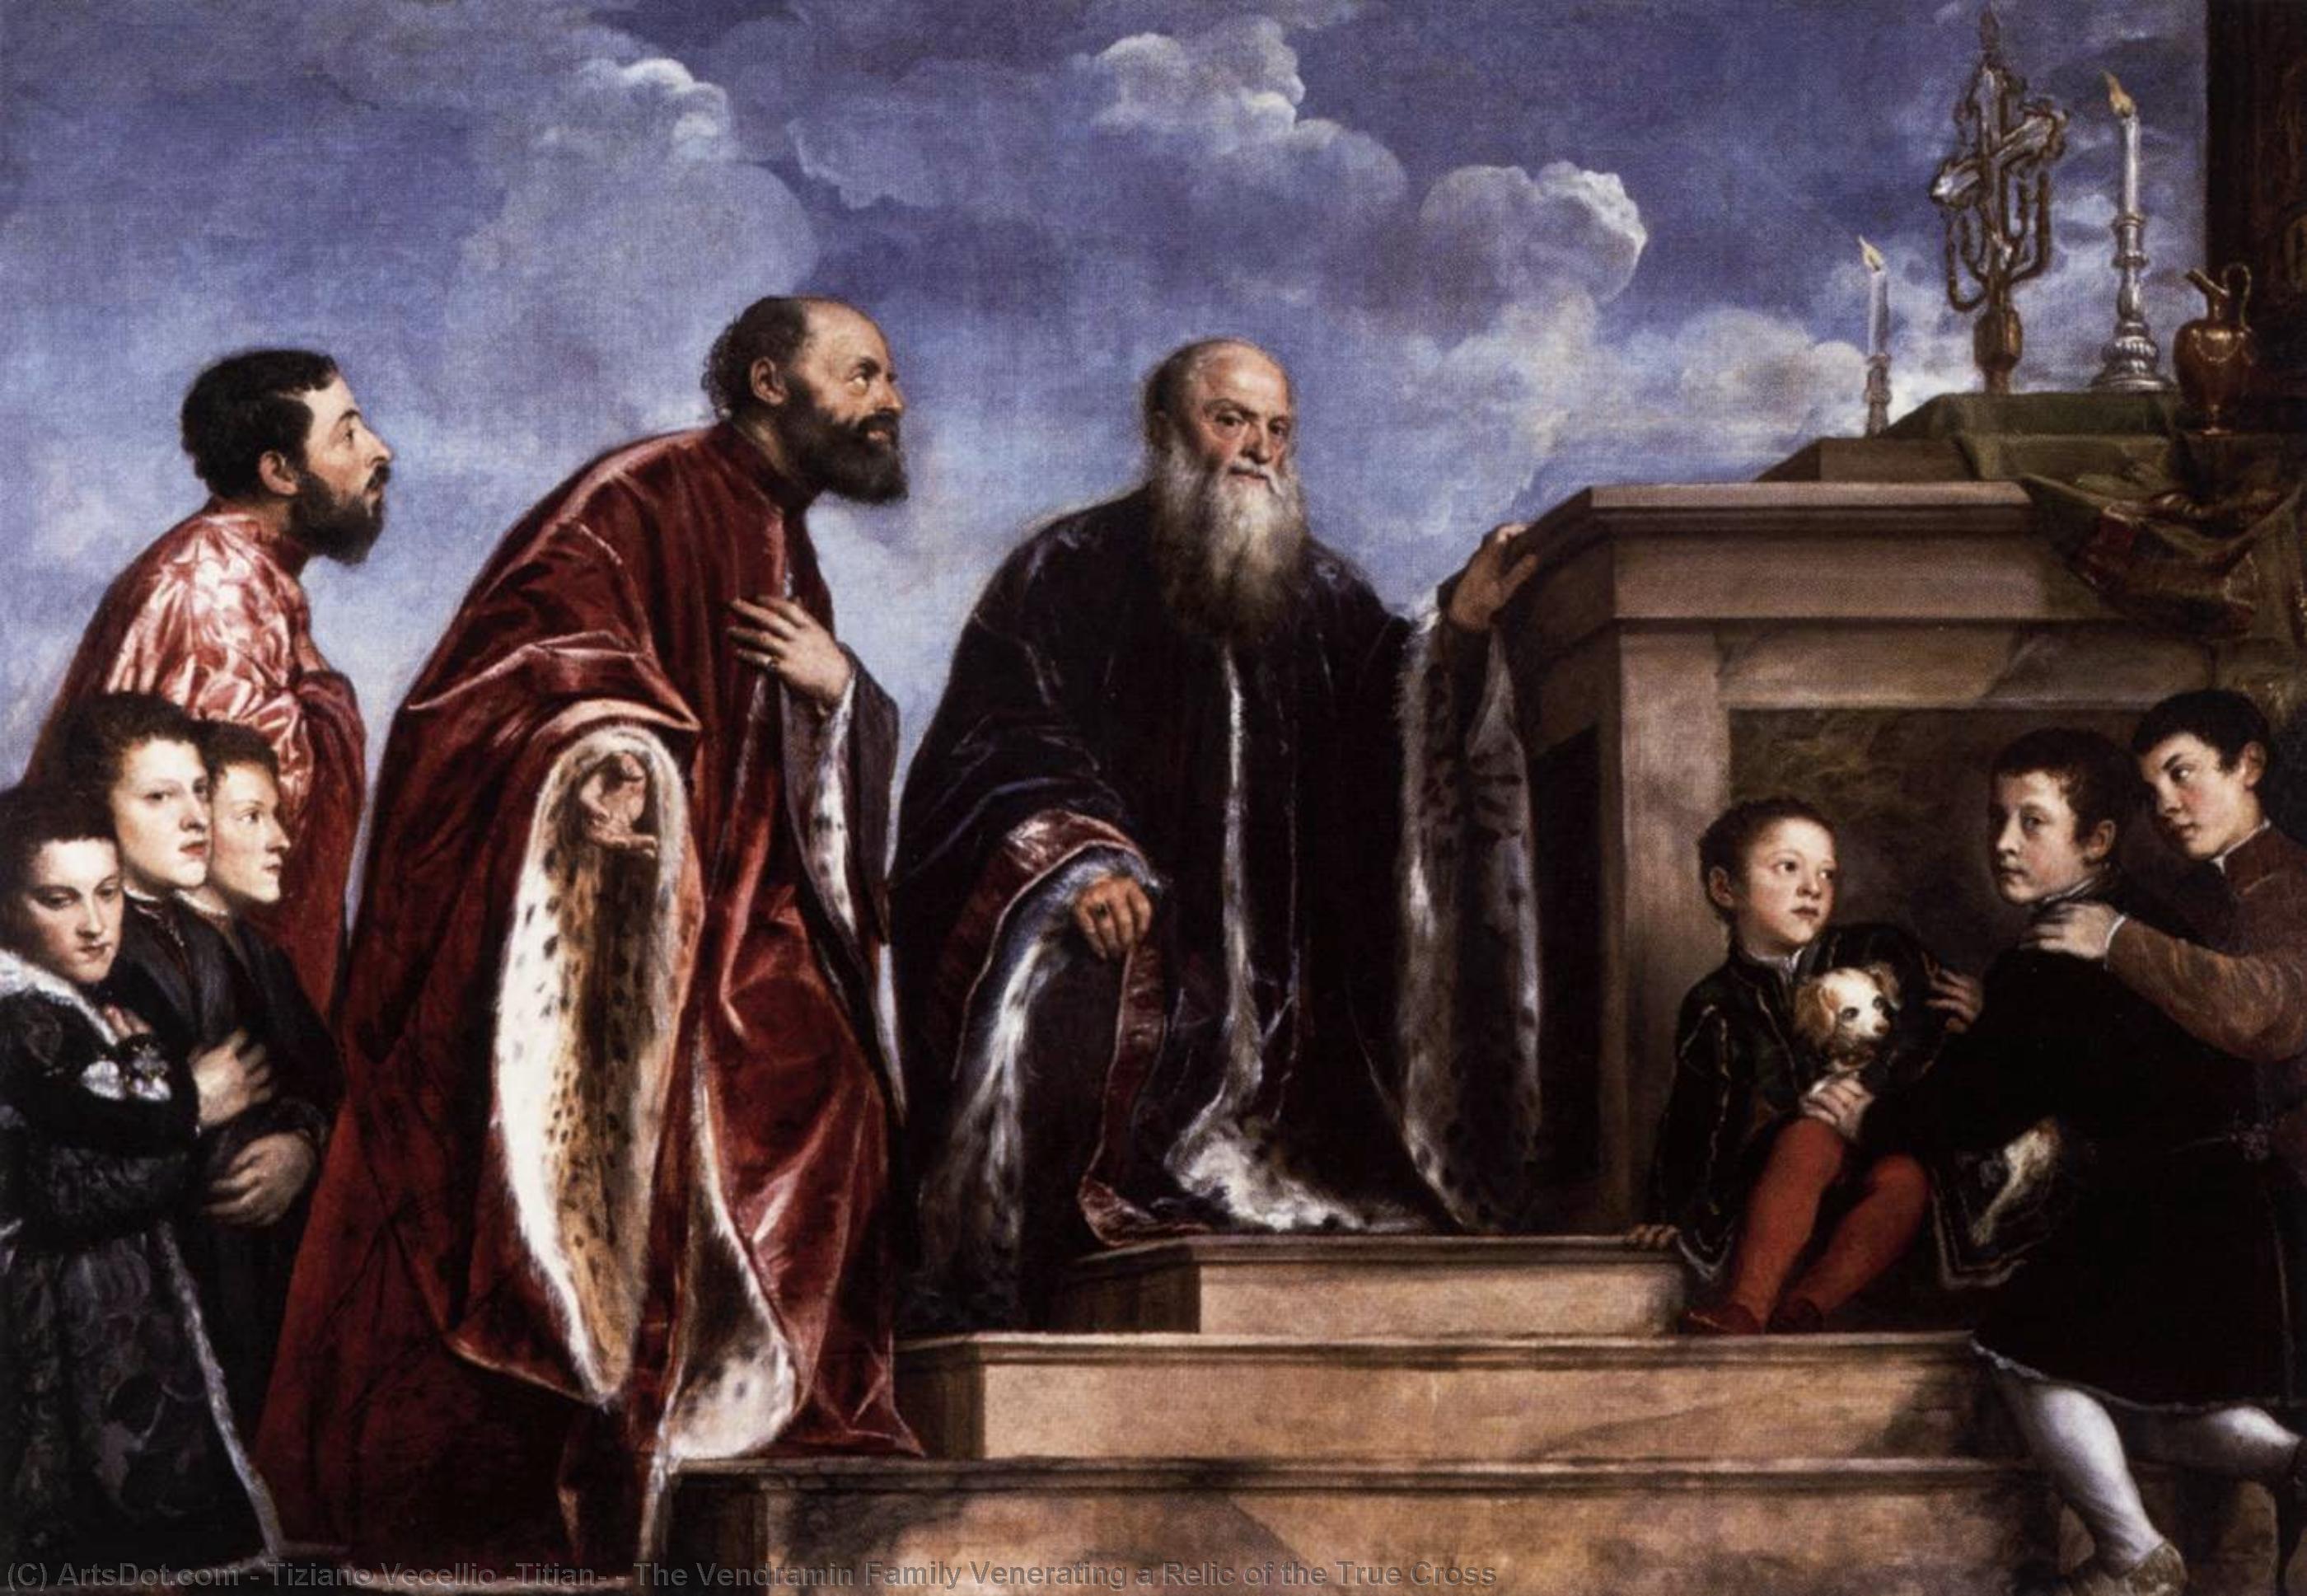 Wikioo.org - Encyklopedia Sztuk Pięknych - Malarstwo, Grafika Tiziano Vecellio (Titian) - The Vendramin Family Venerating a Relic of the True Cross